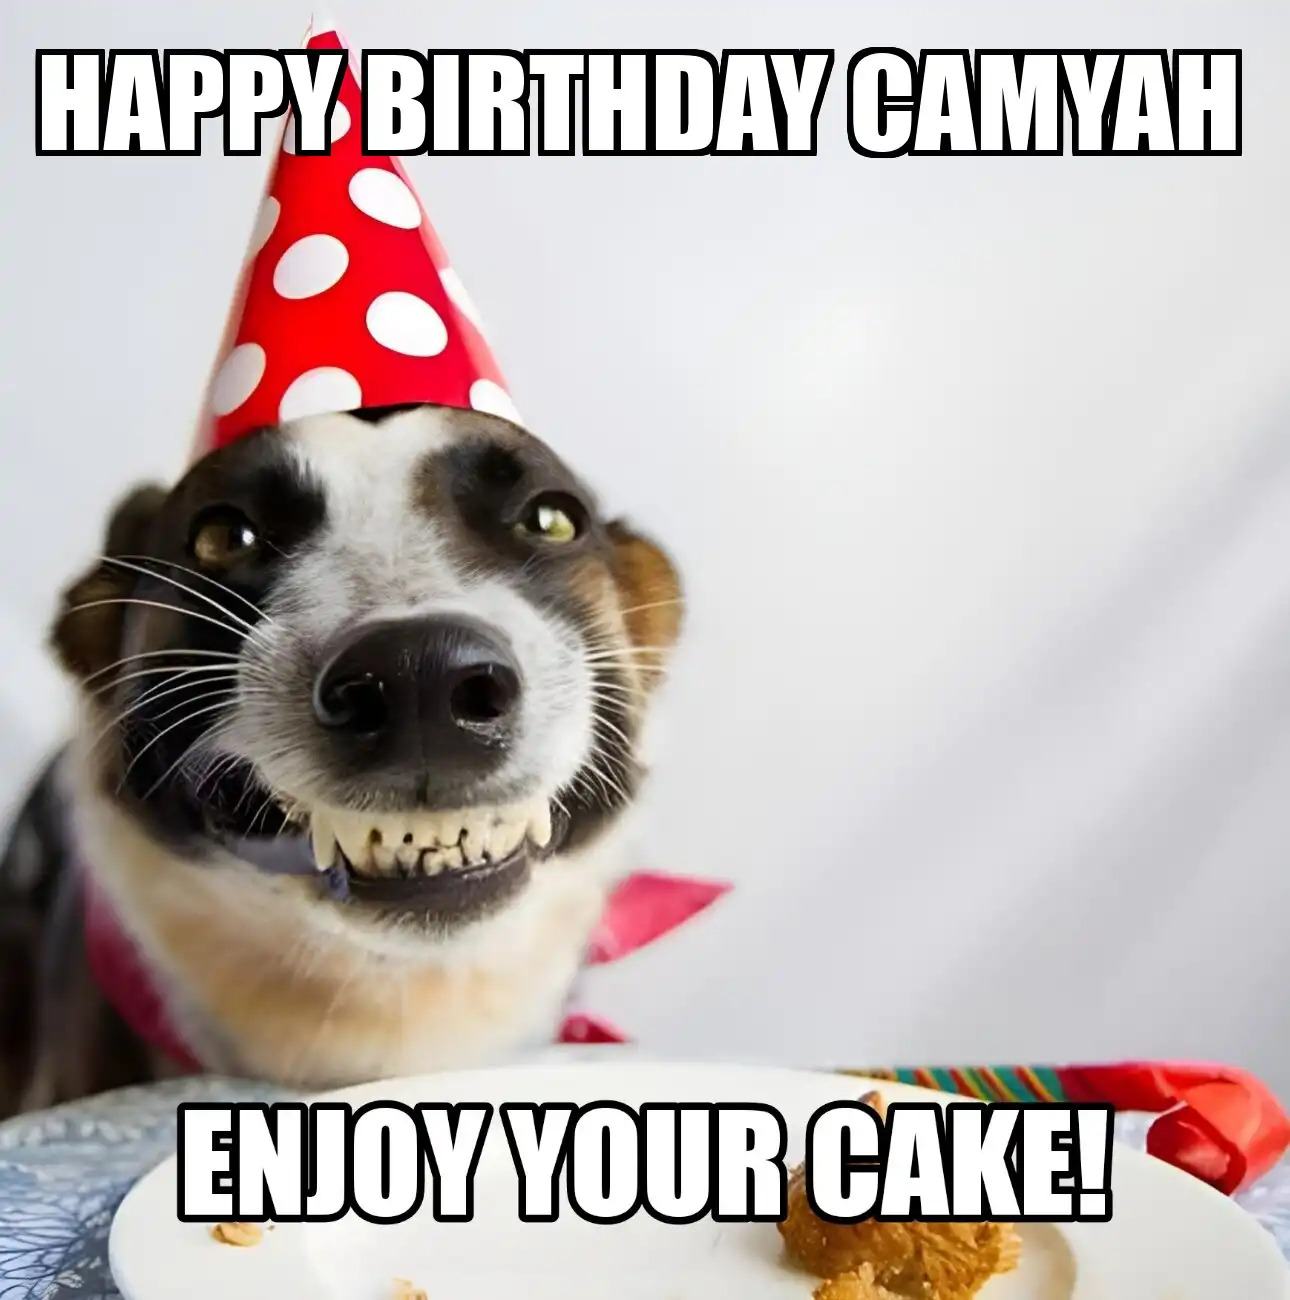 Happy Birthday Camyah Enjoy Your Cake Dog Meme